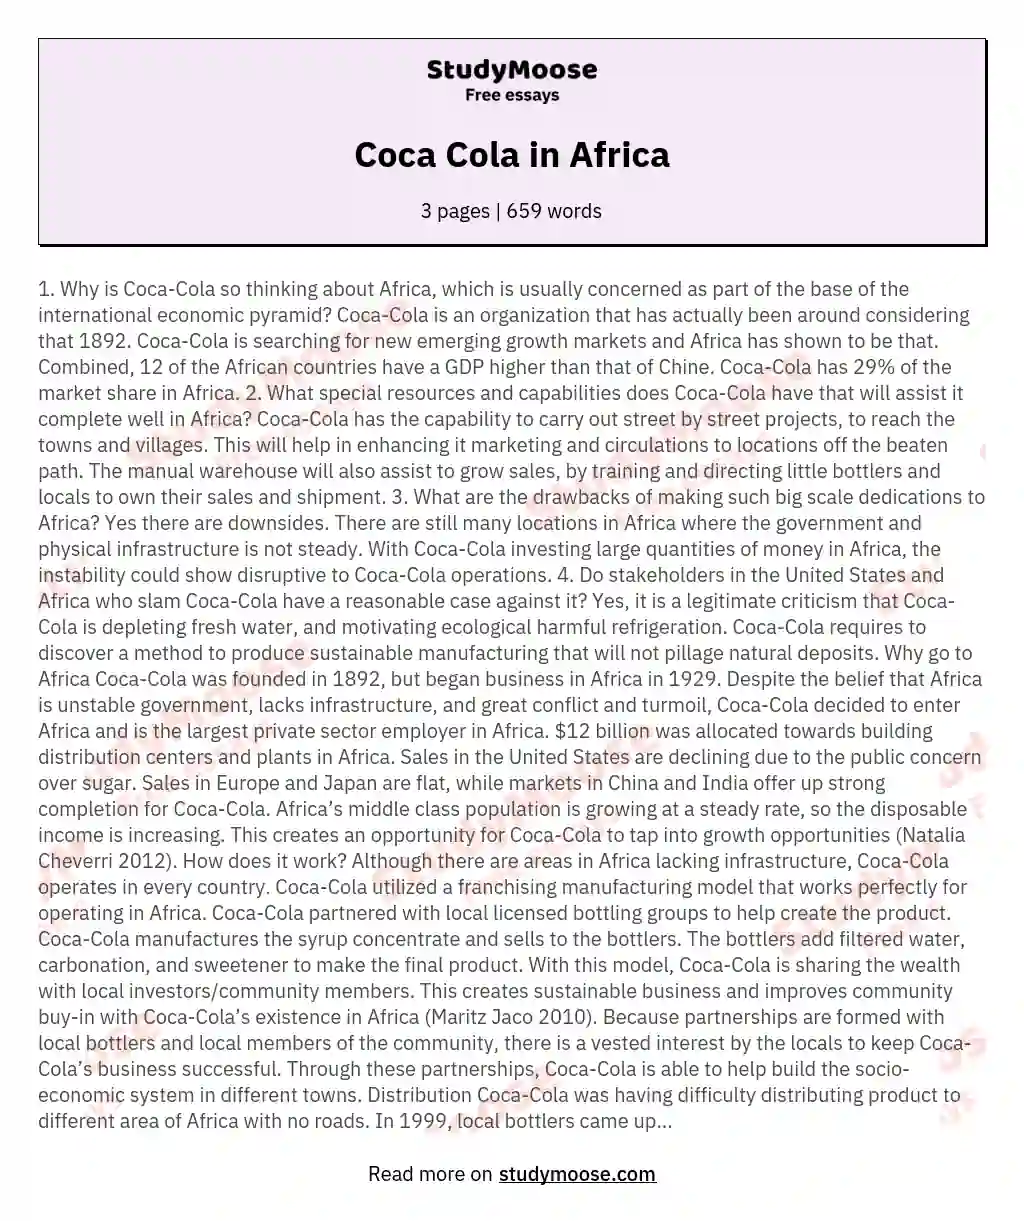 Coca Cola in Africa